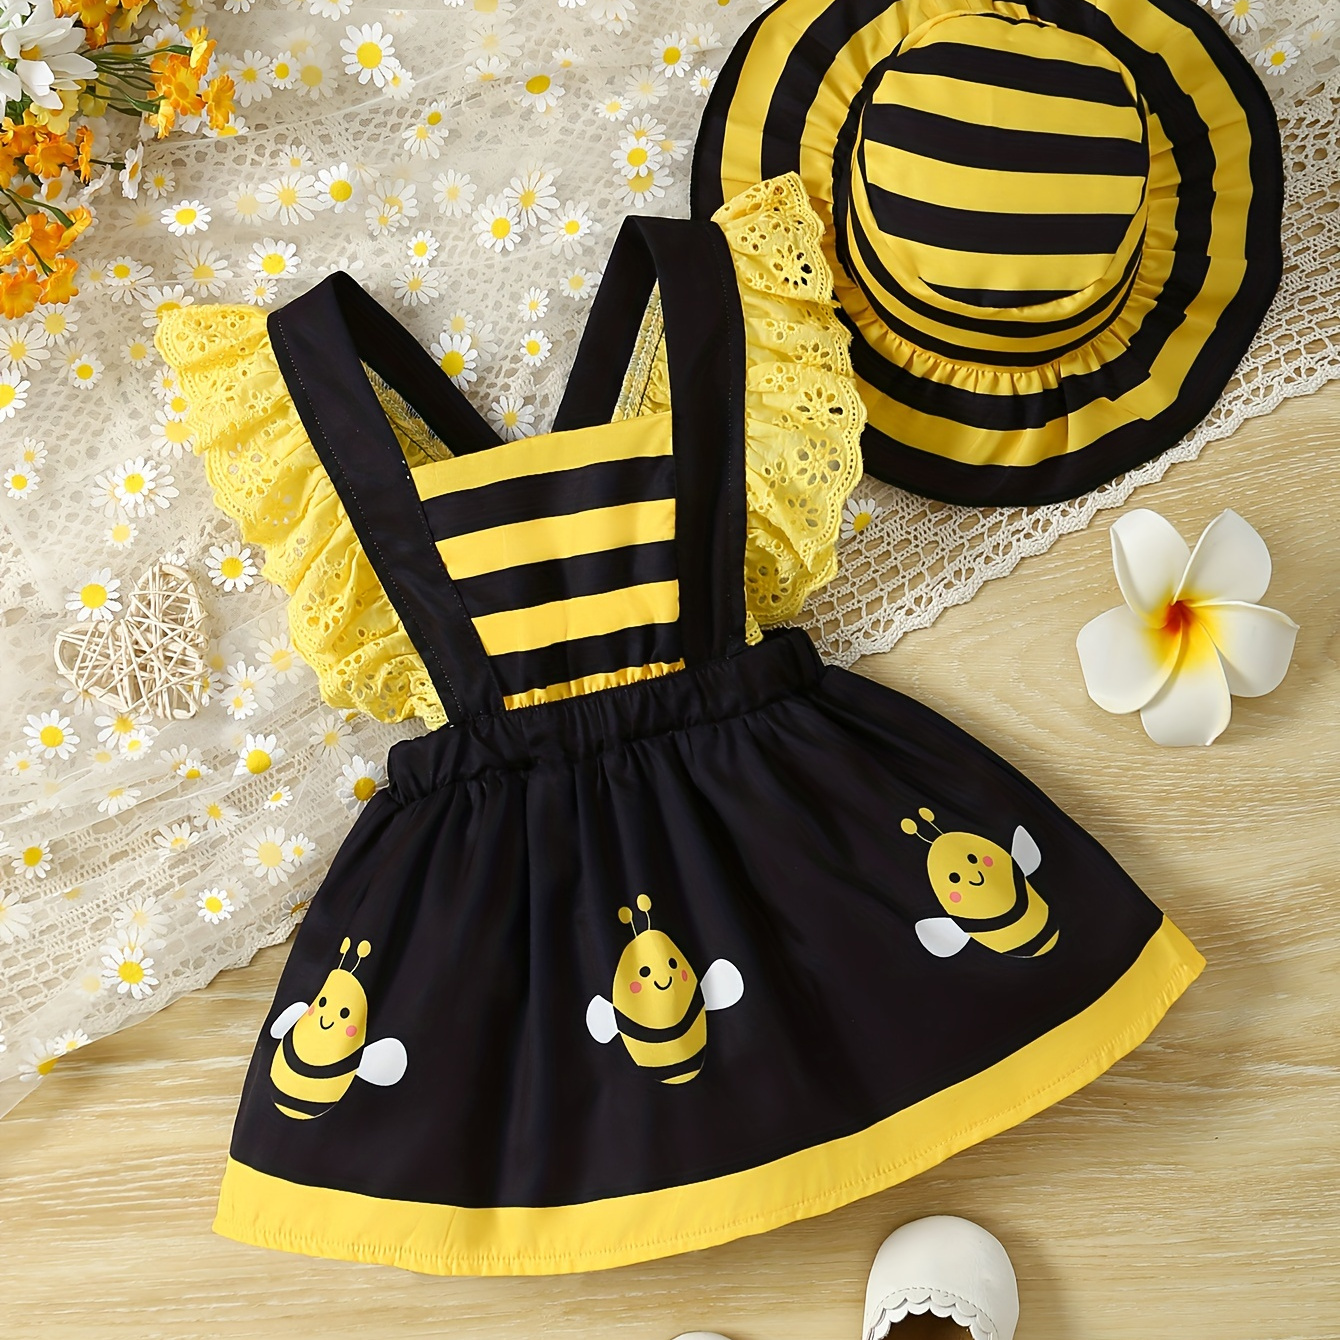 

Baby's Cute Print Lovely Dress & Stripe Pattern Hat, Ruffle Decor Sleeveless Dress, Infant & Toddler Girl's Clothing For Summer/spring, As Gift